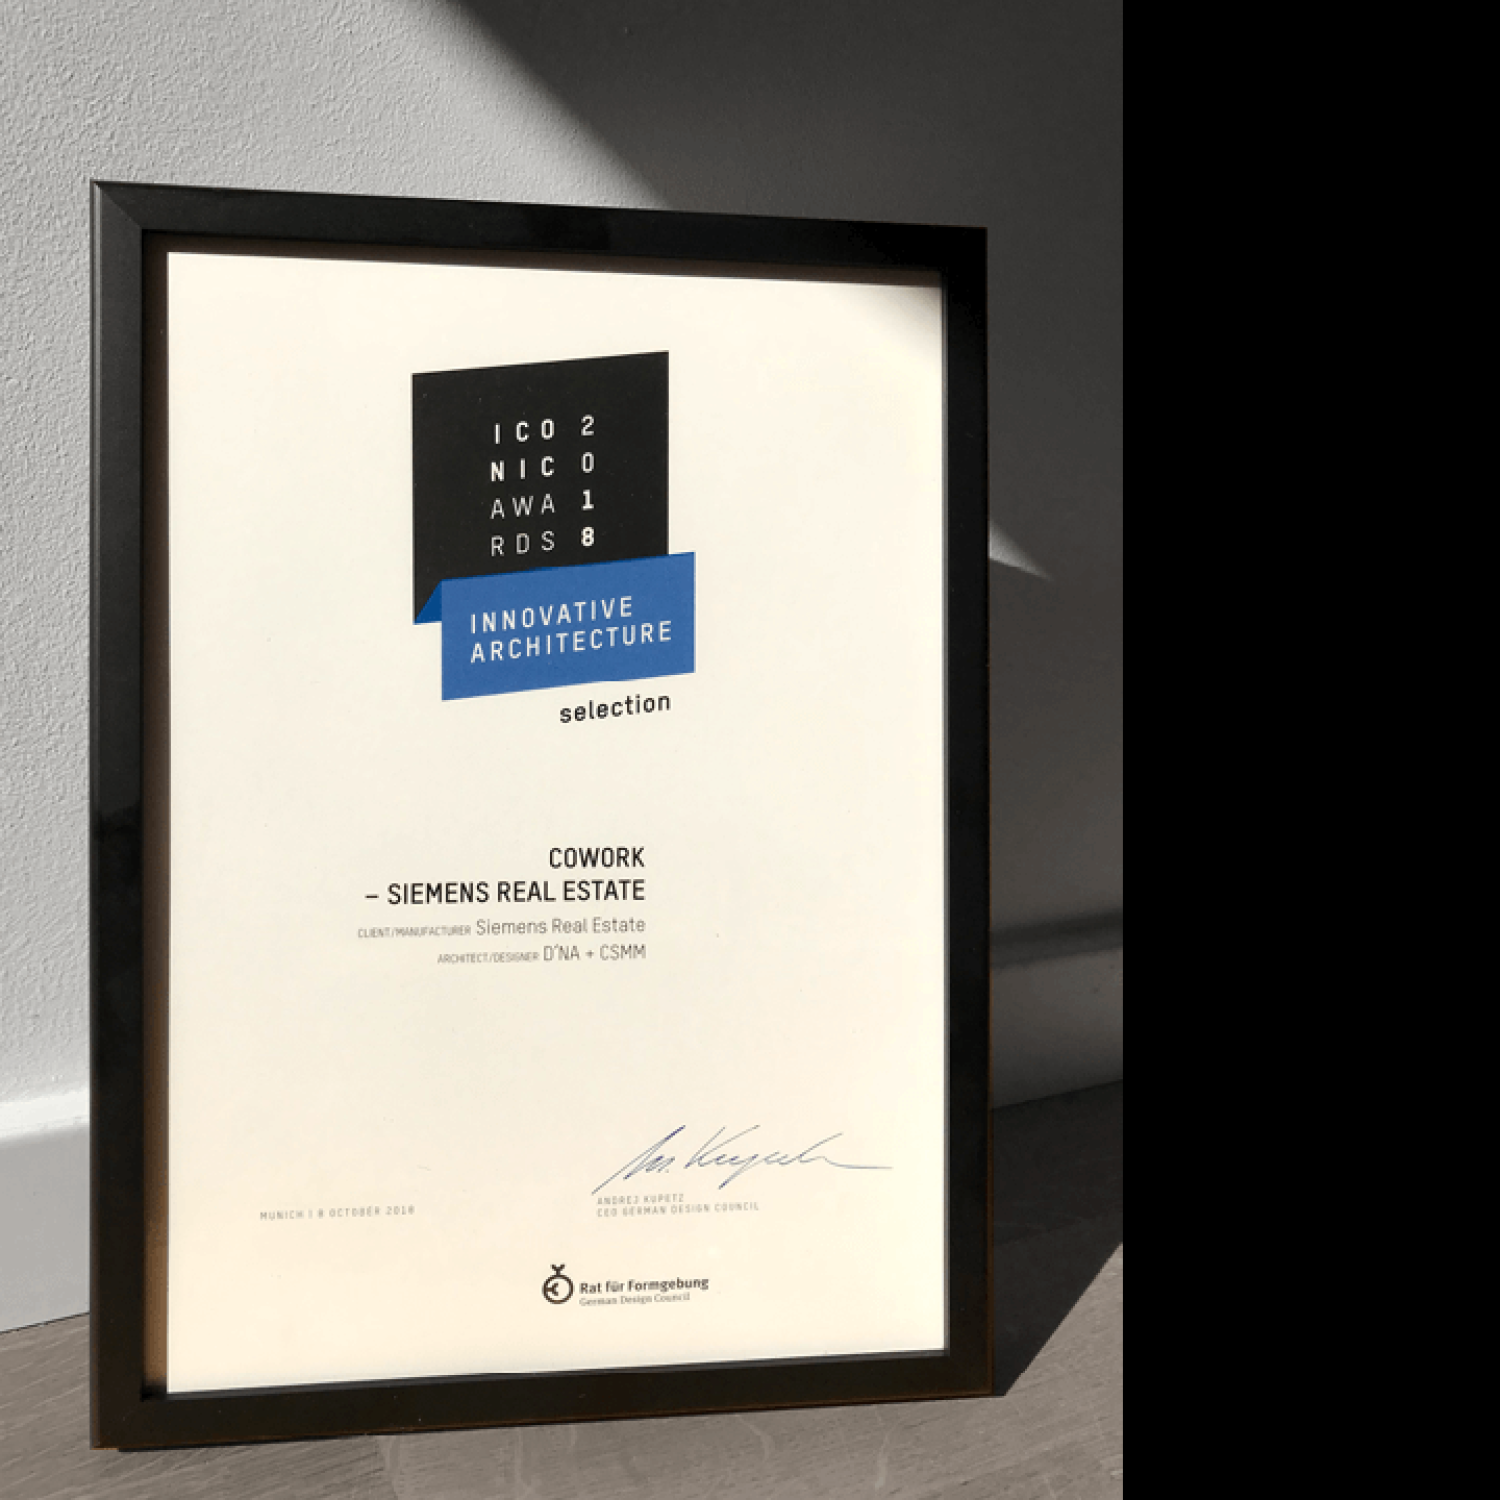 Preisverleihung der ICONIC AWARDS: Innovative Architecture 2018 in der Pinakothek der Moderne in München – DNA und CSMM nehmen Auszeichnung für COWORK – SIEMENS REAL ESTATE entgegen